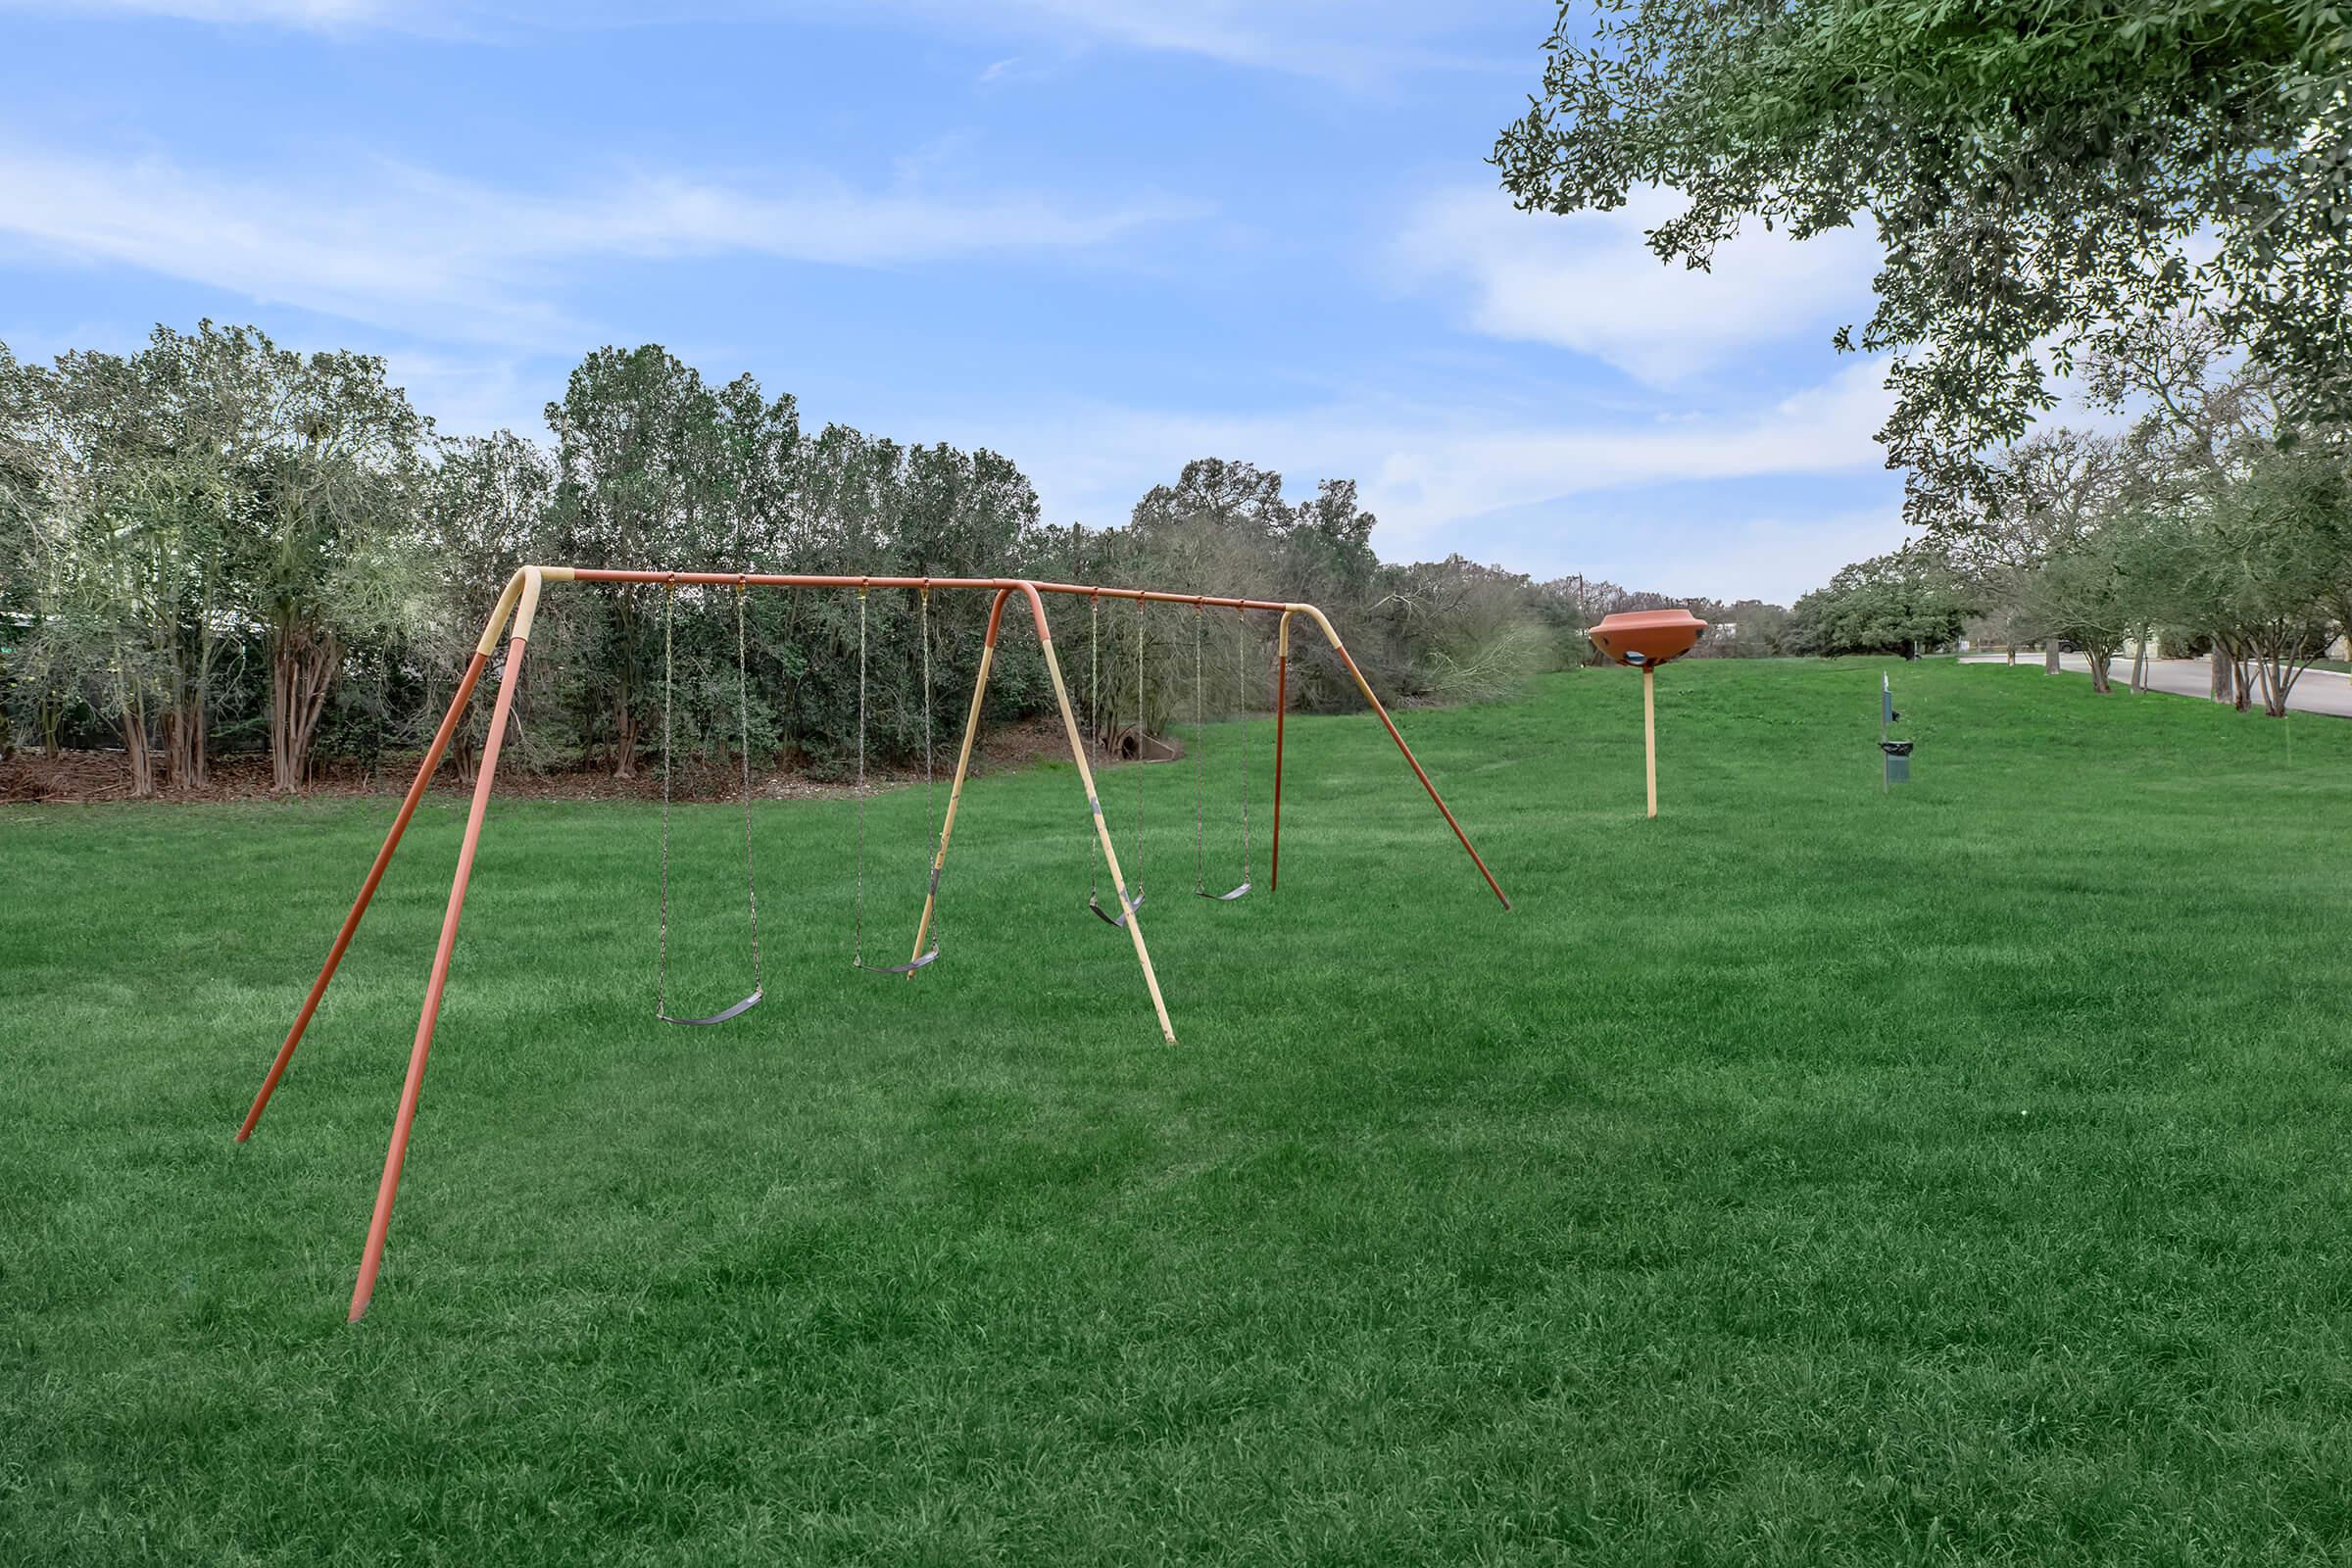 a swing set in a grassy field